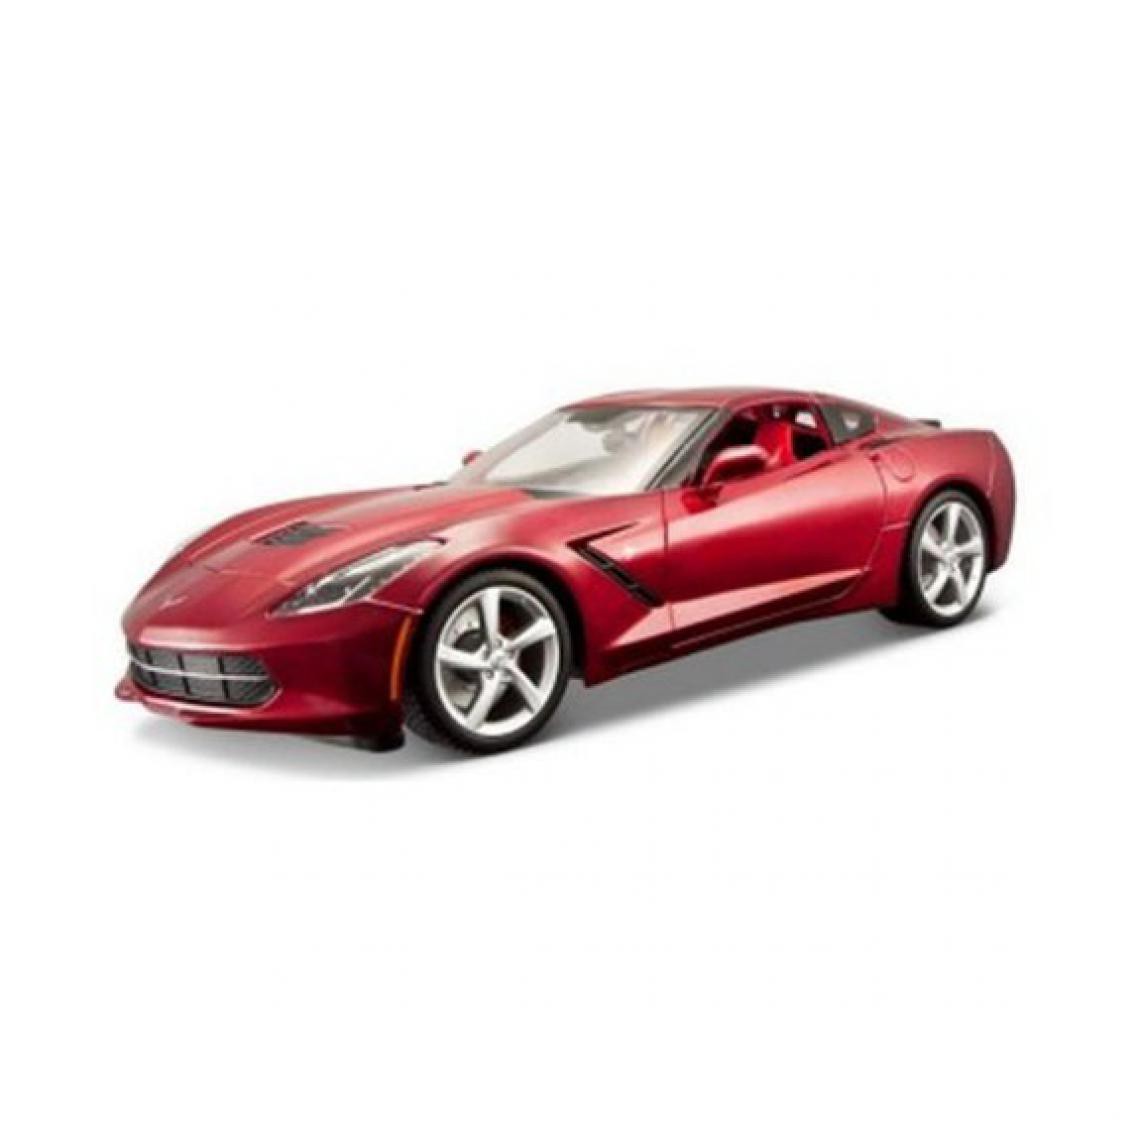 Ludendo - Modèle réduit Chevrolet Corvette Stingray Echelle 1/18 : Rouge - Voitures